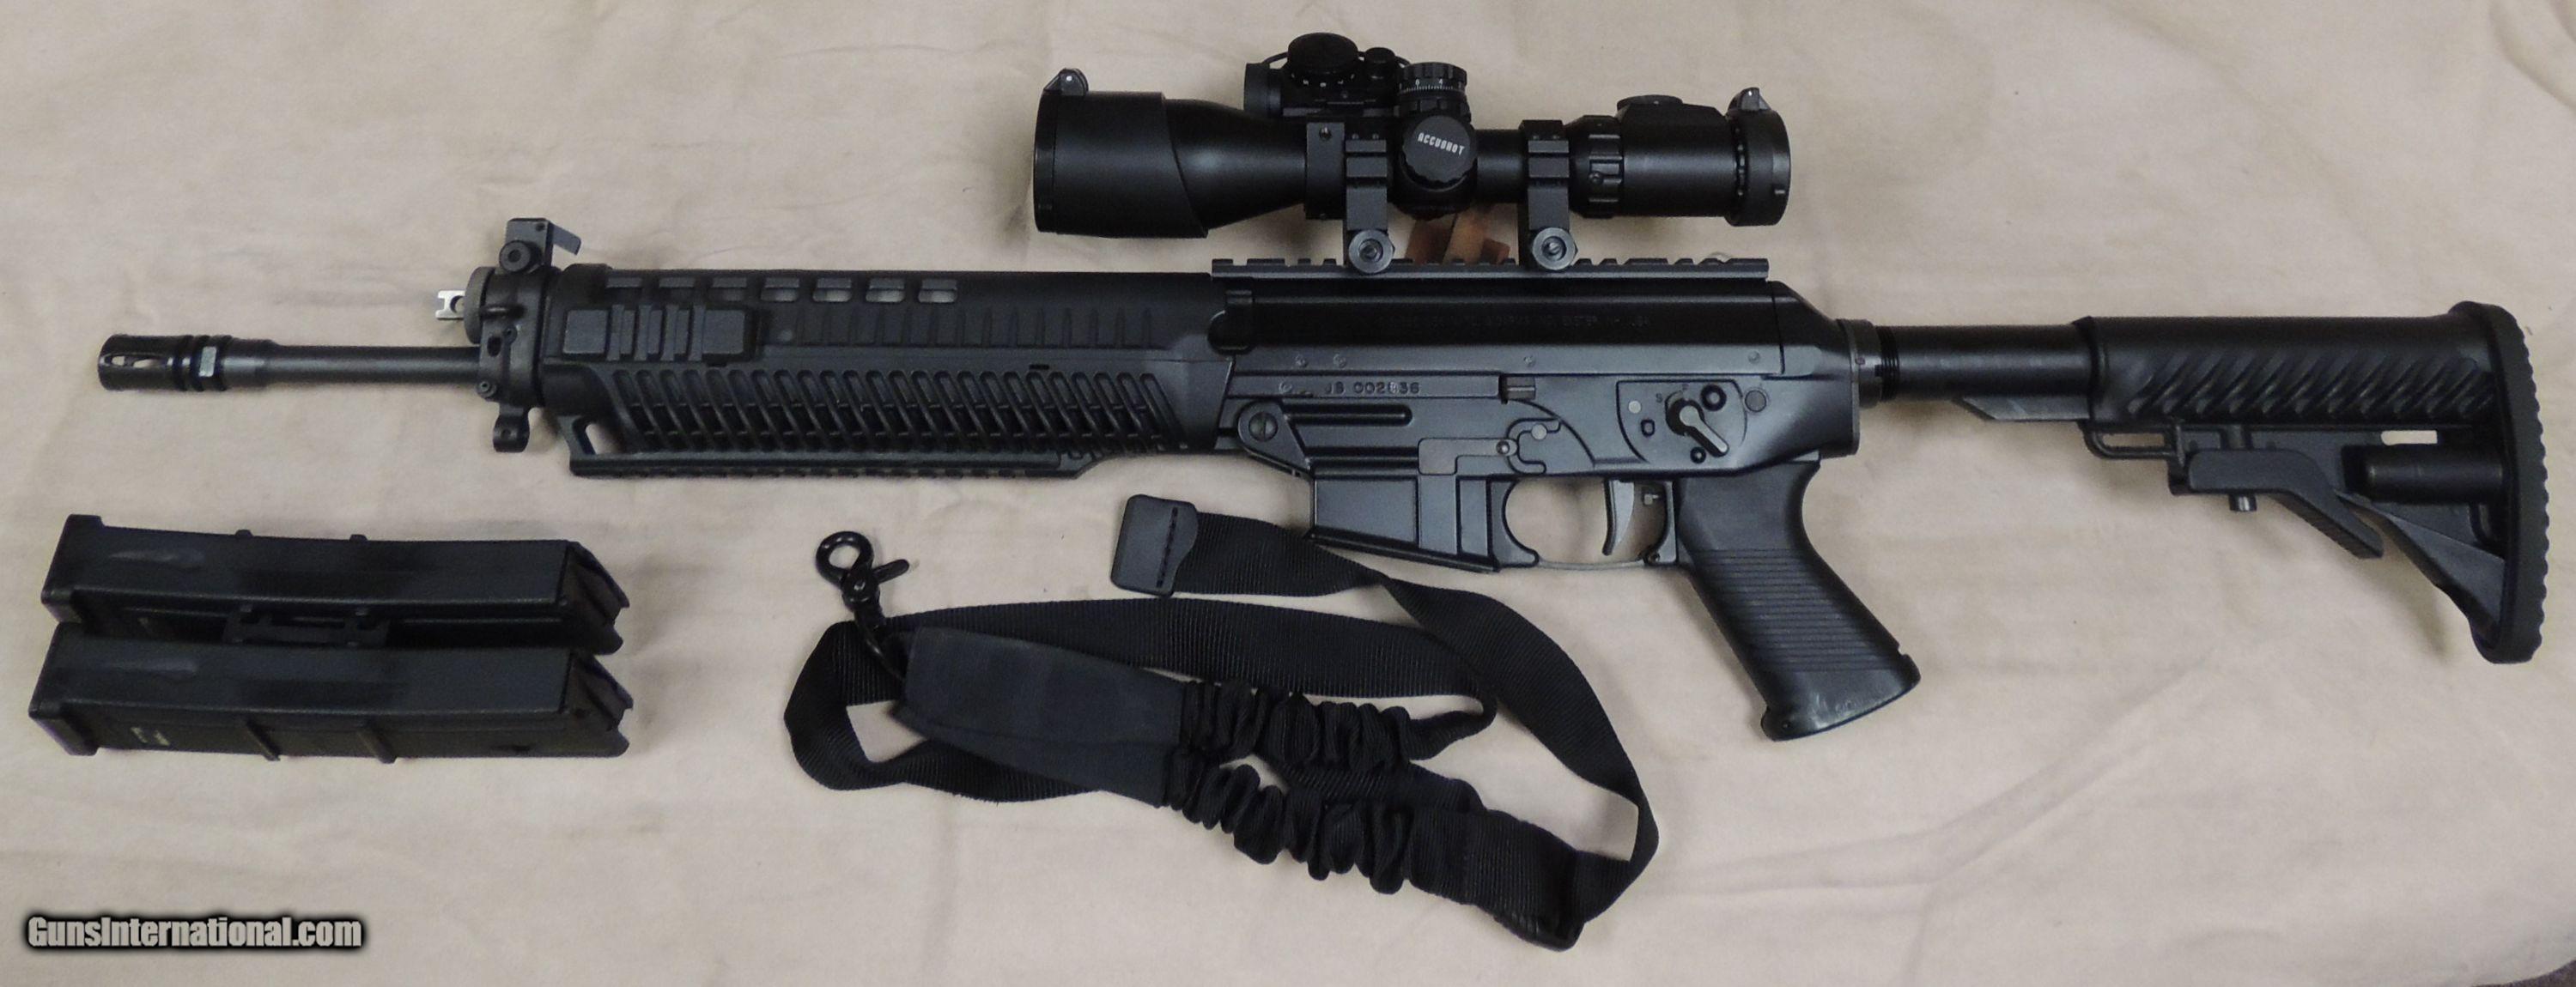 Sig Sauer 556 SWAT 5.56 / 223 Caliber Rifle + EXTRAS S/N JS 002836XX for sa...